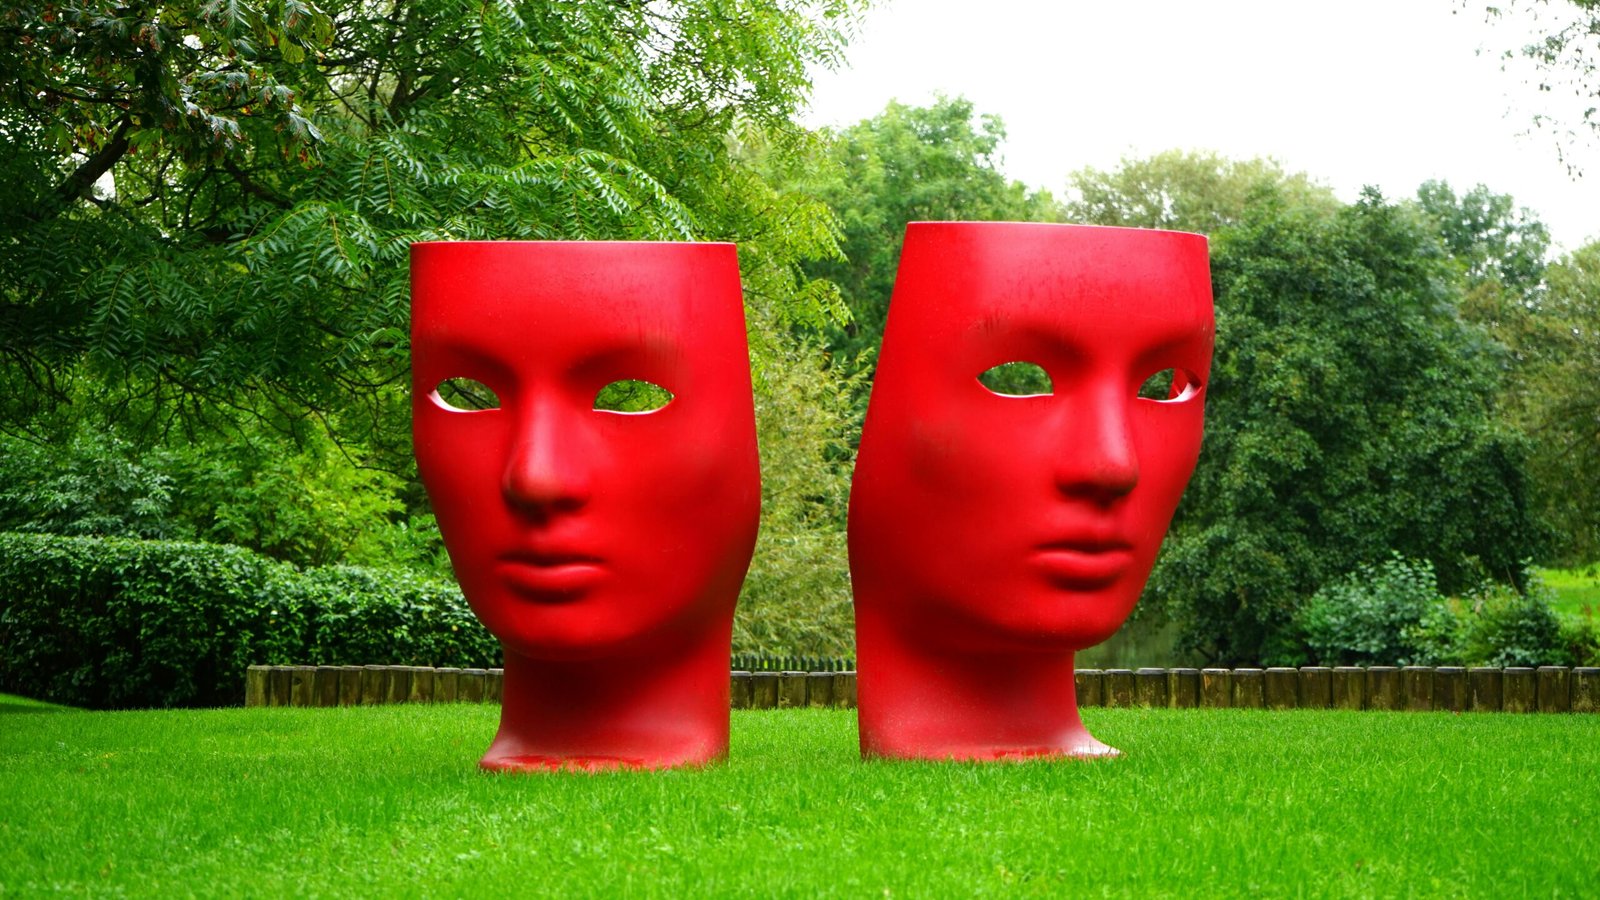 https://www.pexels.com/es-es/foto/monumento-de-rostro-humano-rojo-en-campo-de-hierba-verde-189449/